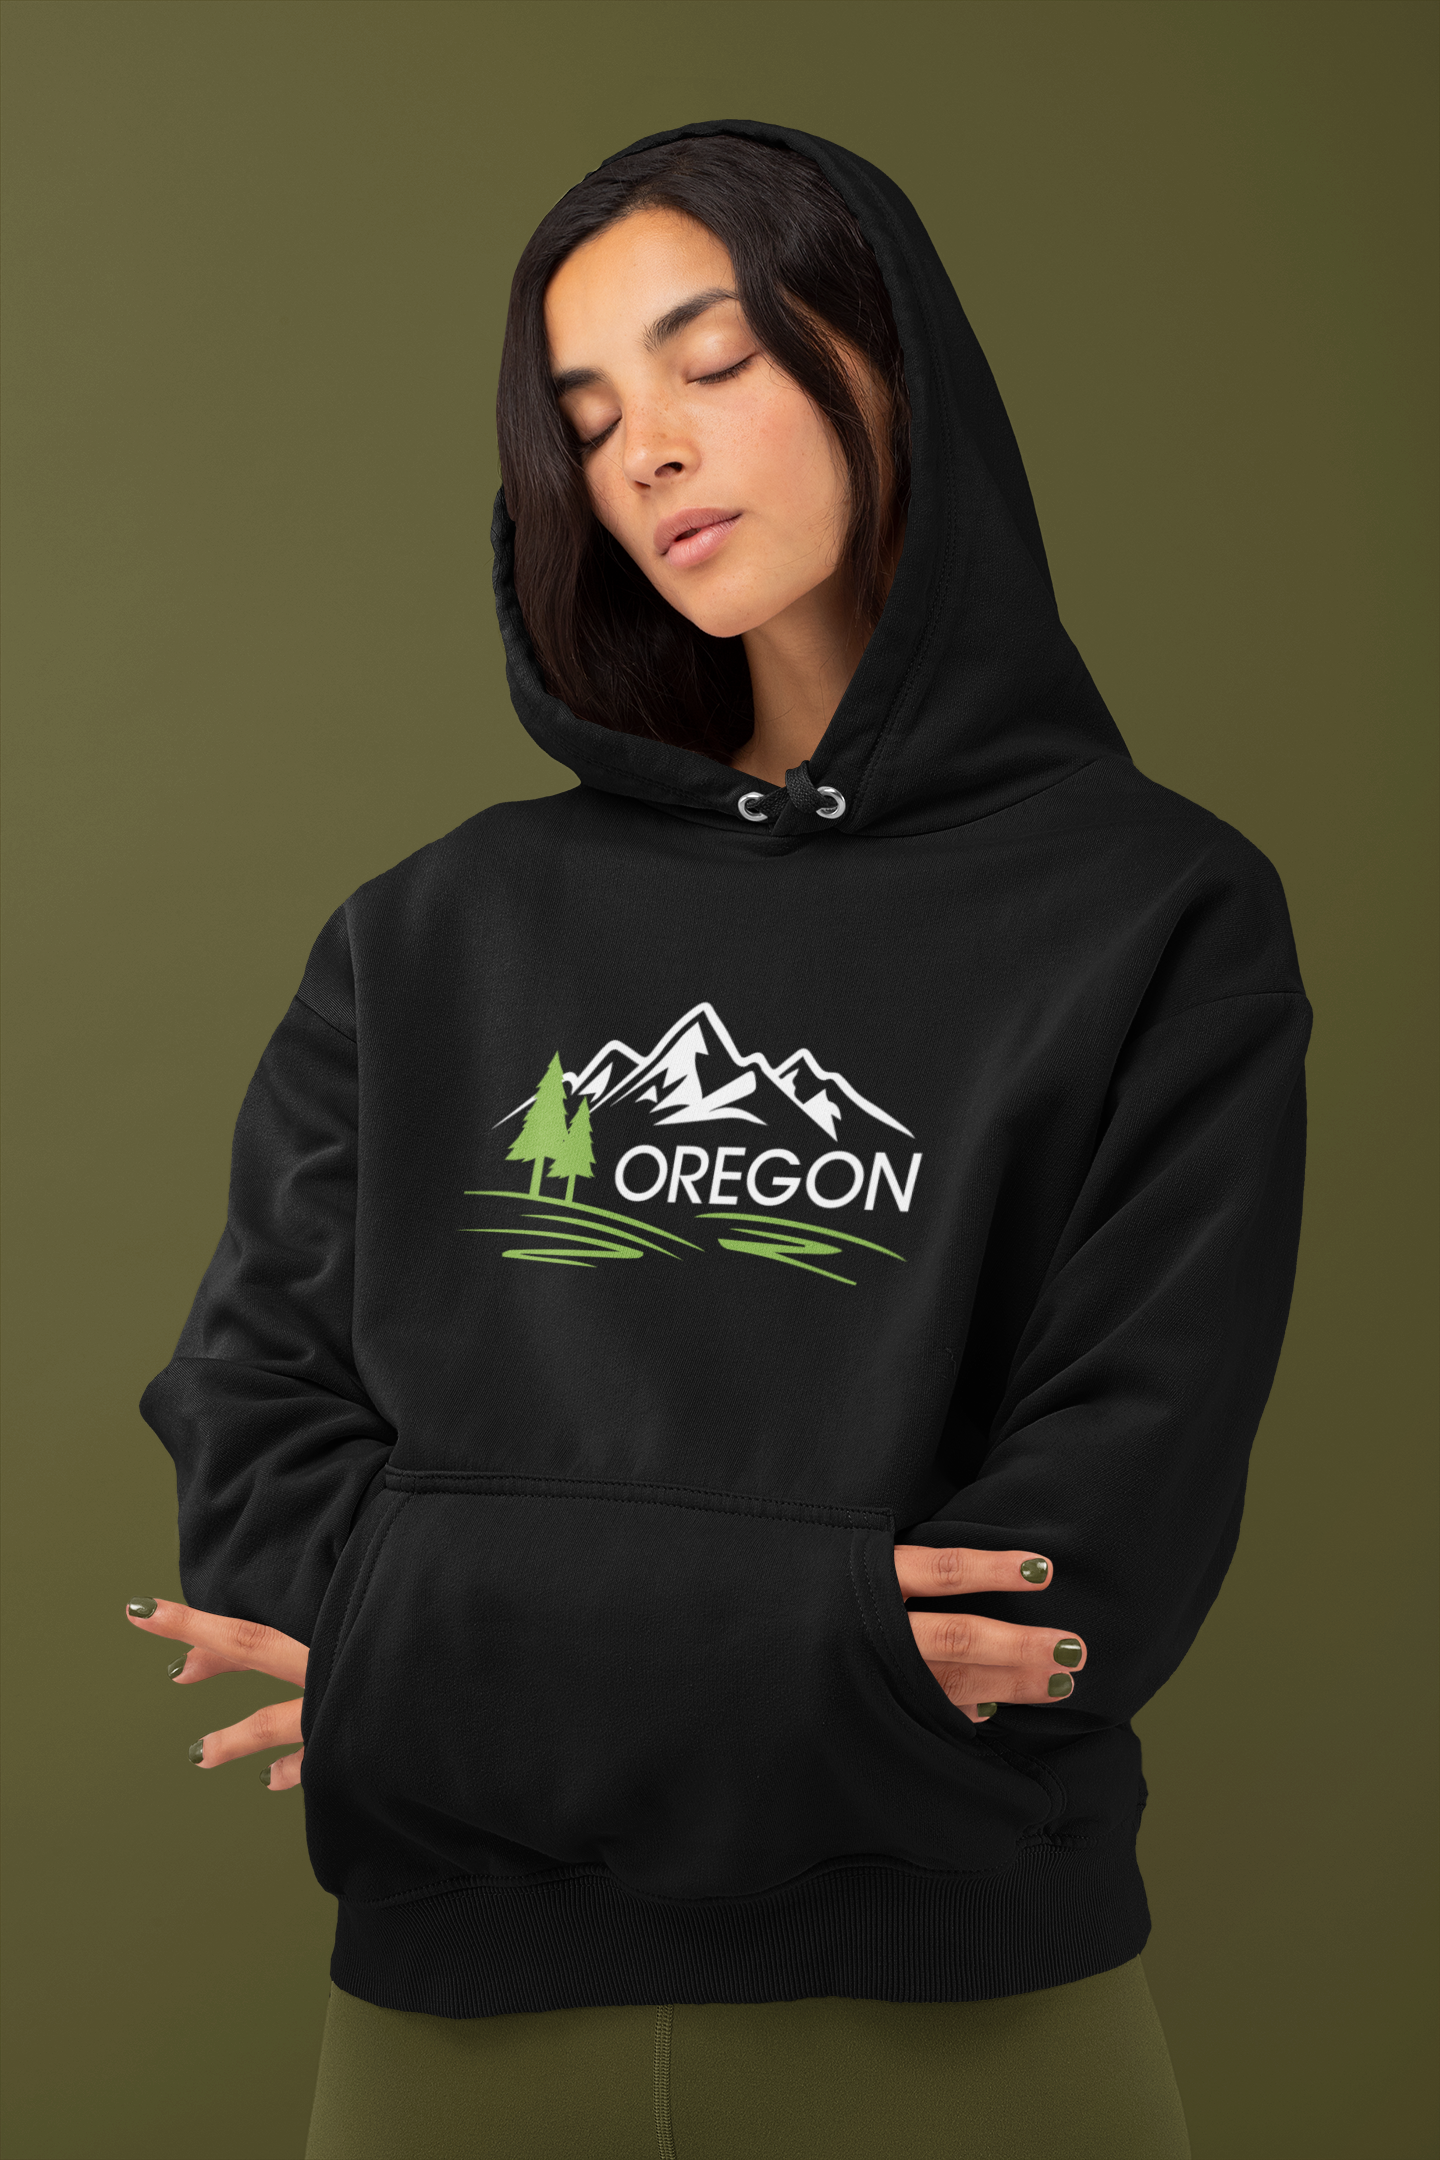 9) Oregon Mountains – Premium Hoodie